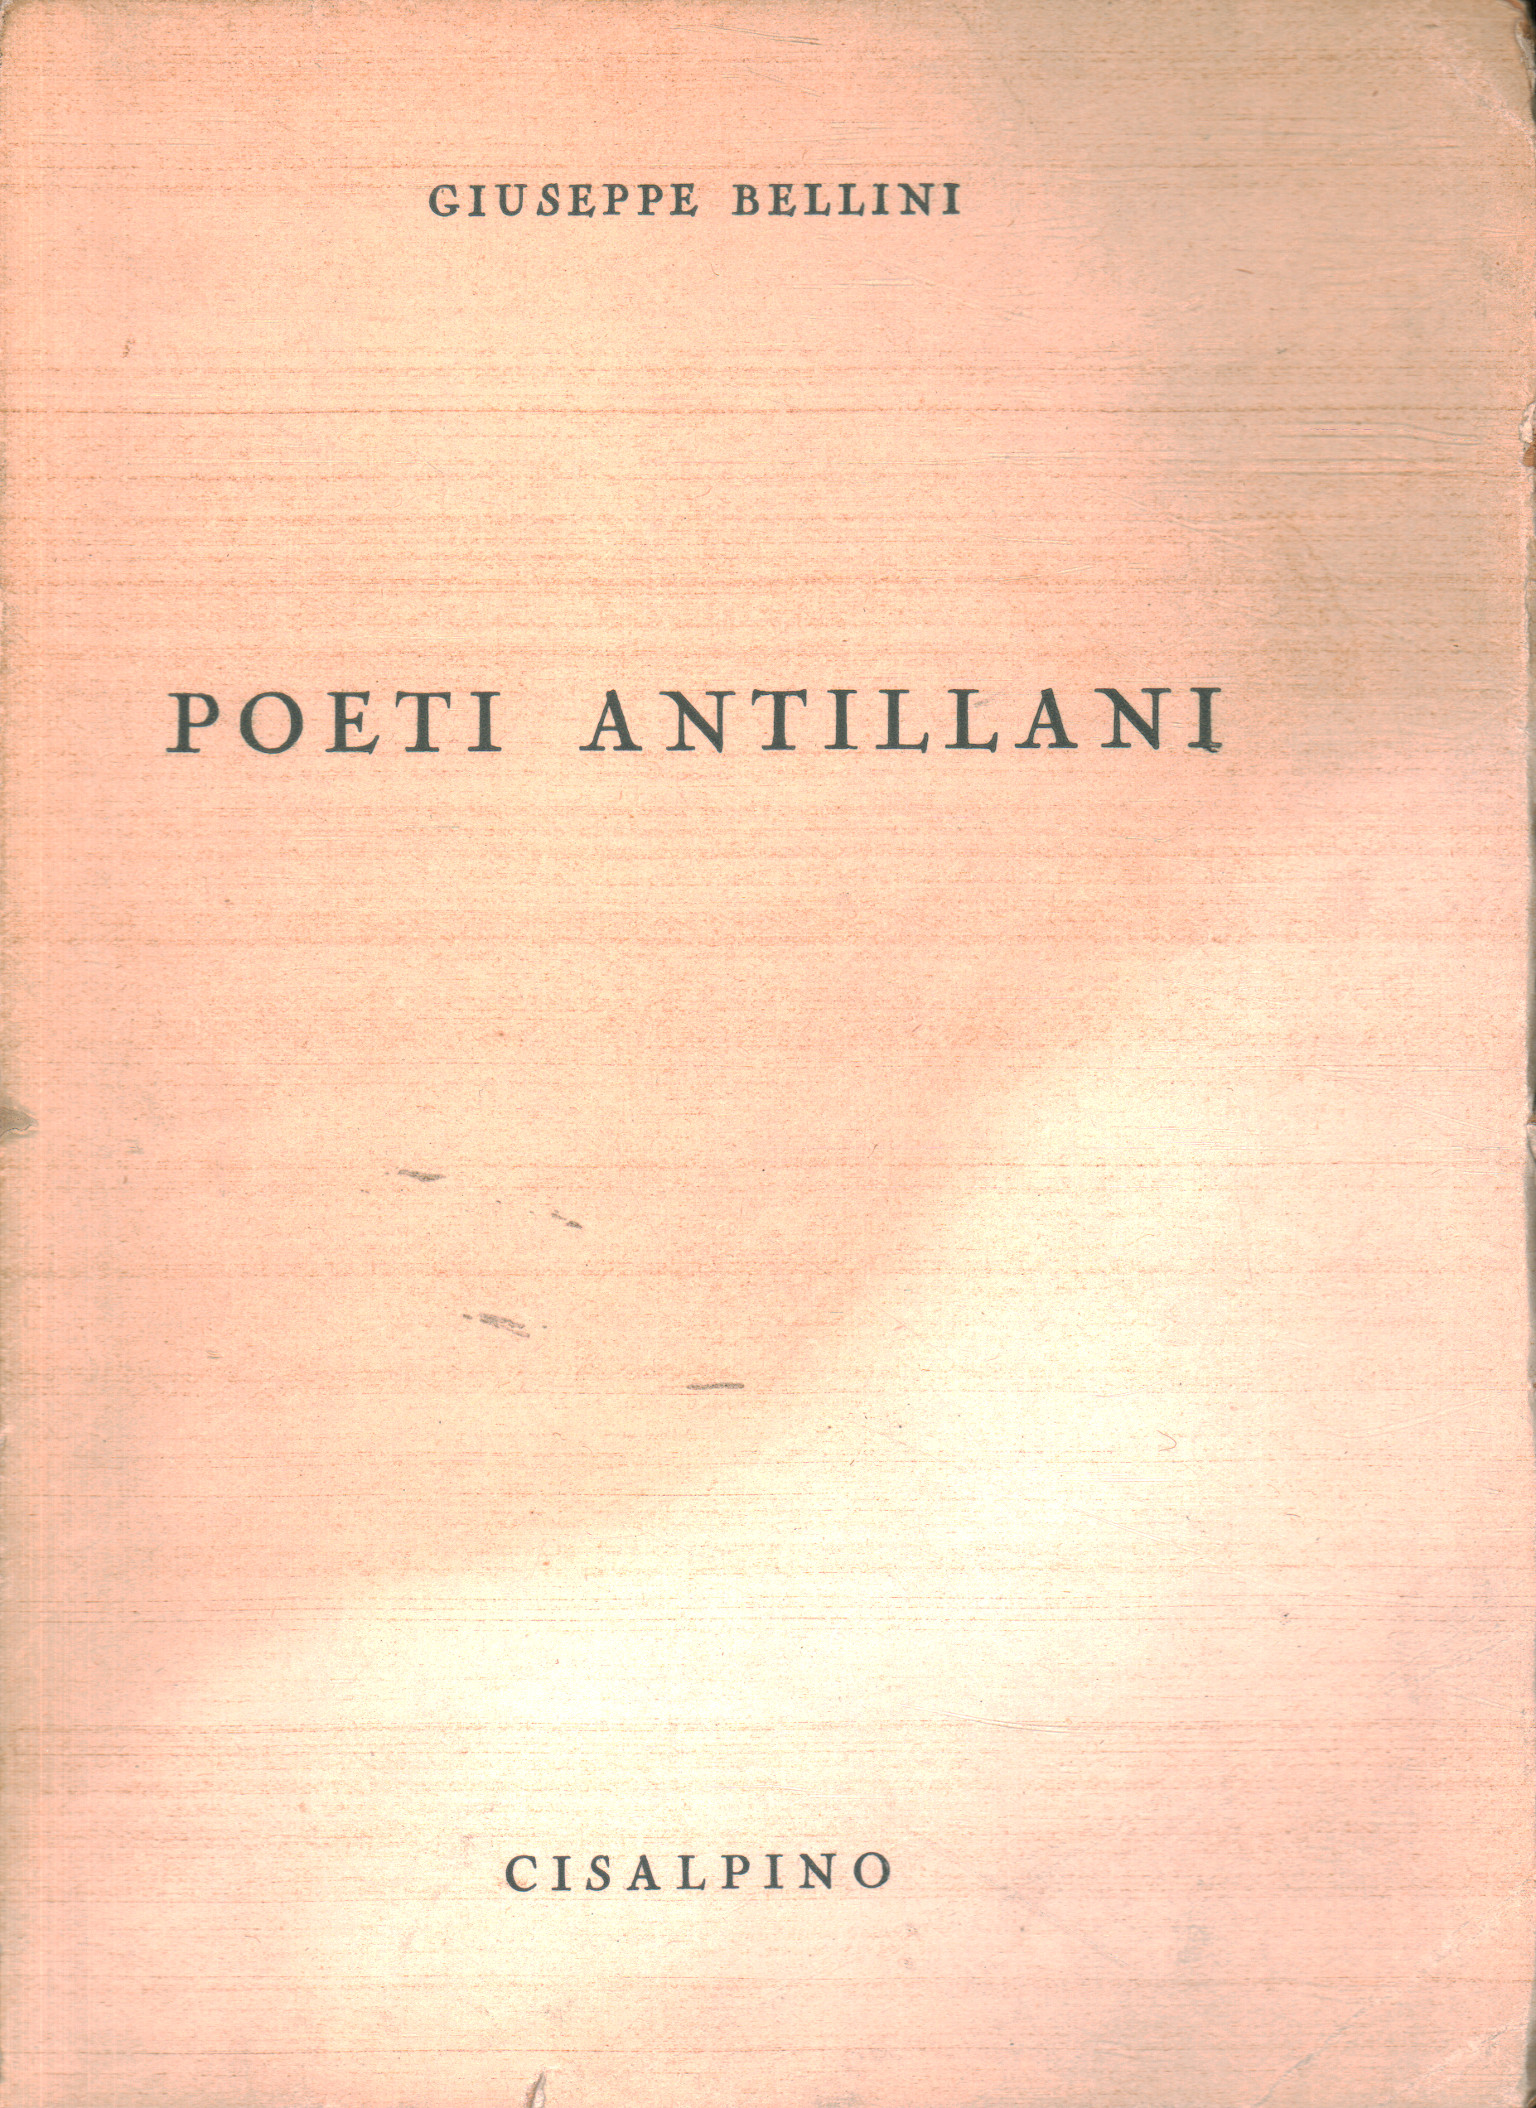 Los poetas de las antillas, Giuseppe Bellini